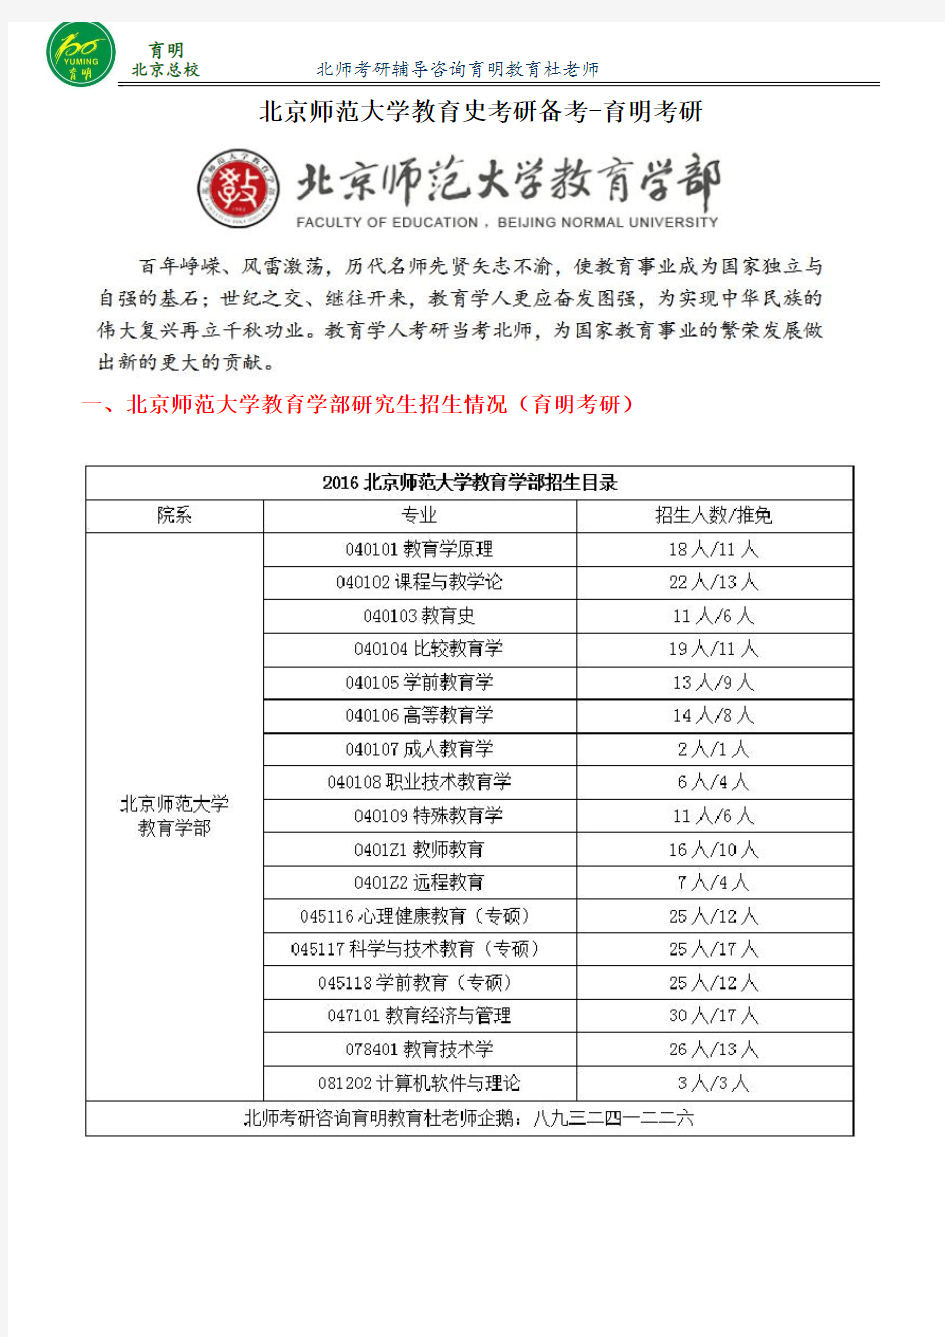 北京师范大学教育史考研招生人数,录取比例